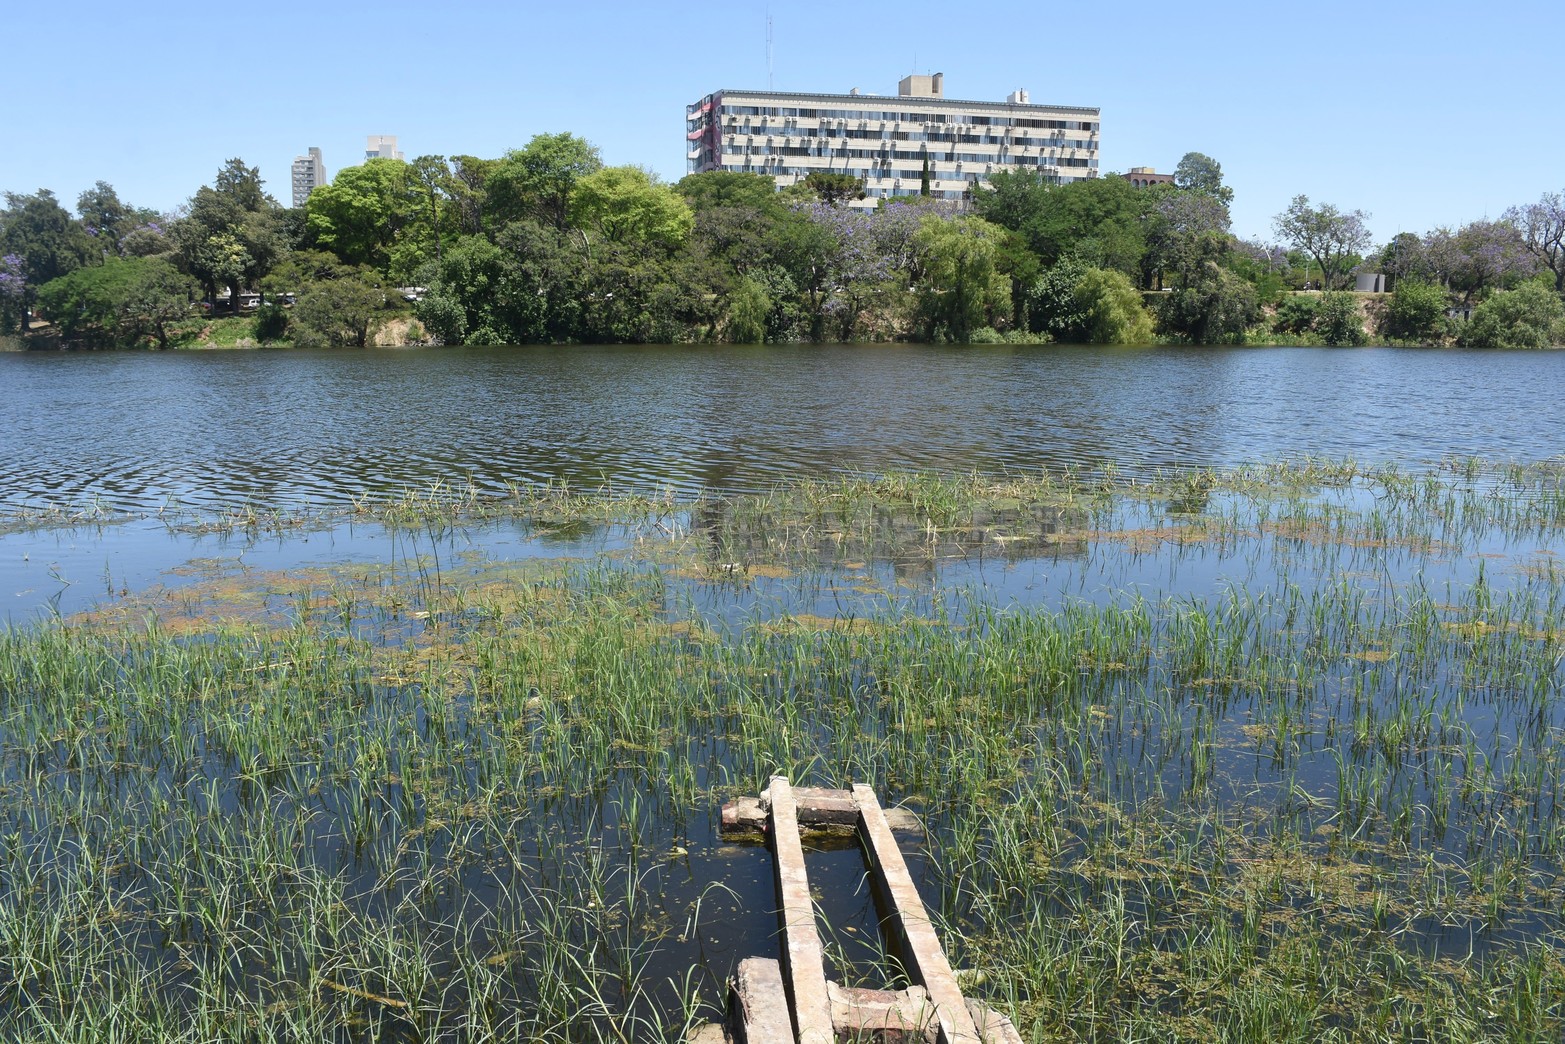 Los estudios de calidad de agua sostienen que los indicadores "están muy bien", remarcó Gabriel Maurer, subsecretario de Ambiente del Municipio. Se realizó una jornada de limpieza para erradicar los residuos en las márgenes e interior del lago.